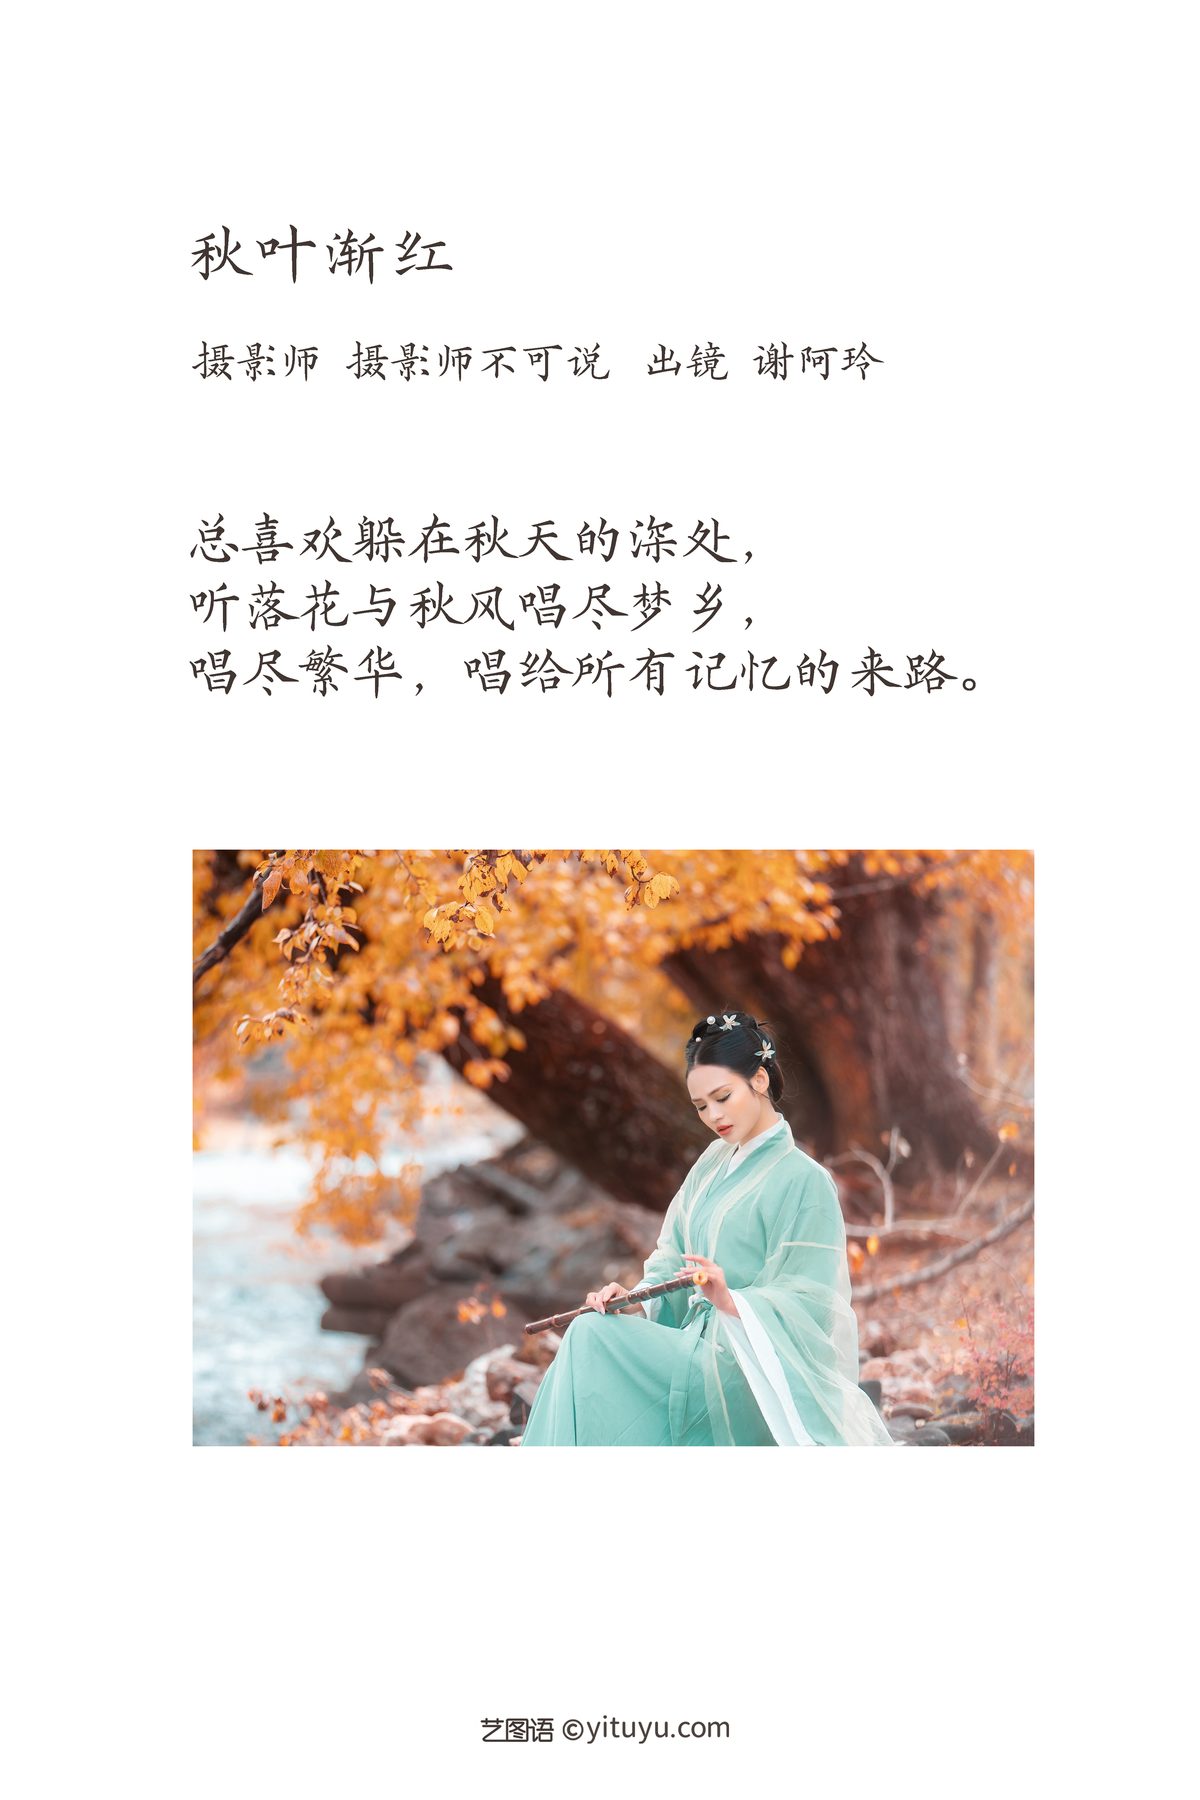 YiTuYu艺图语 Vol 3545 Xie A Ling 0002 5821063993.jpg